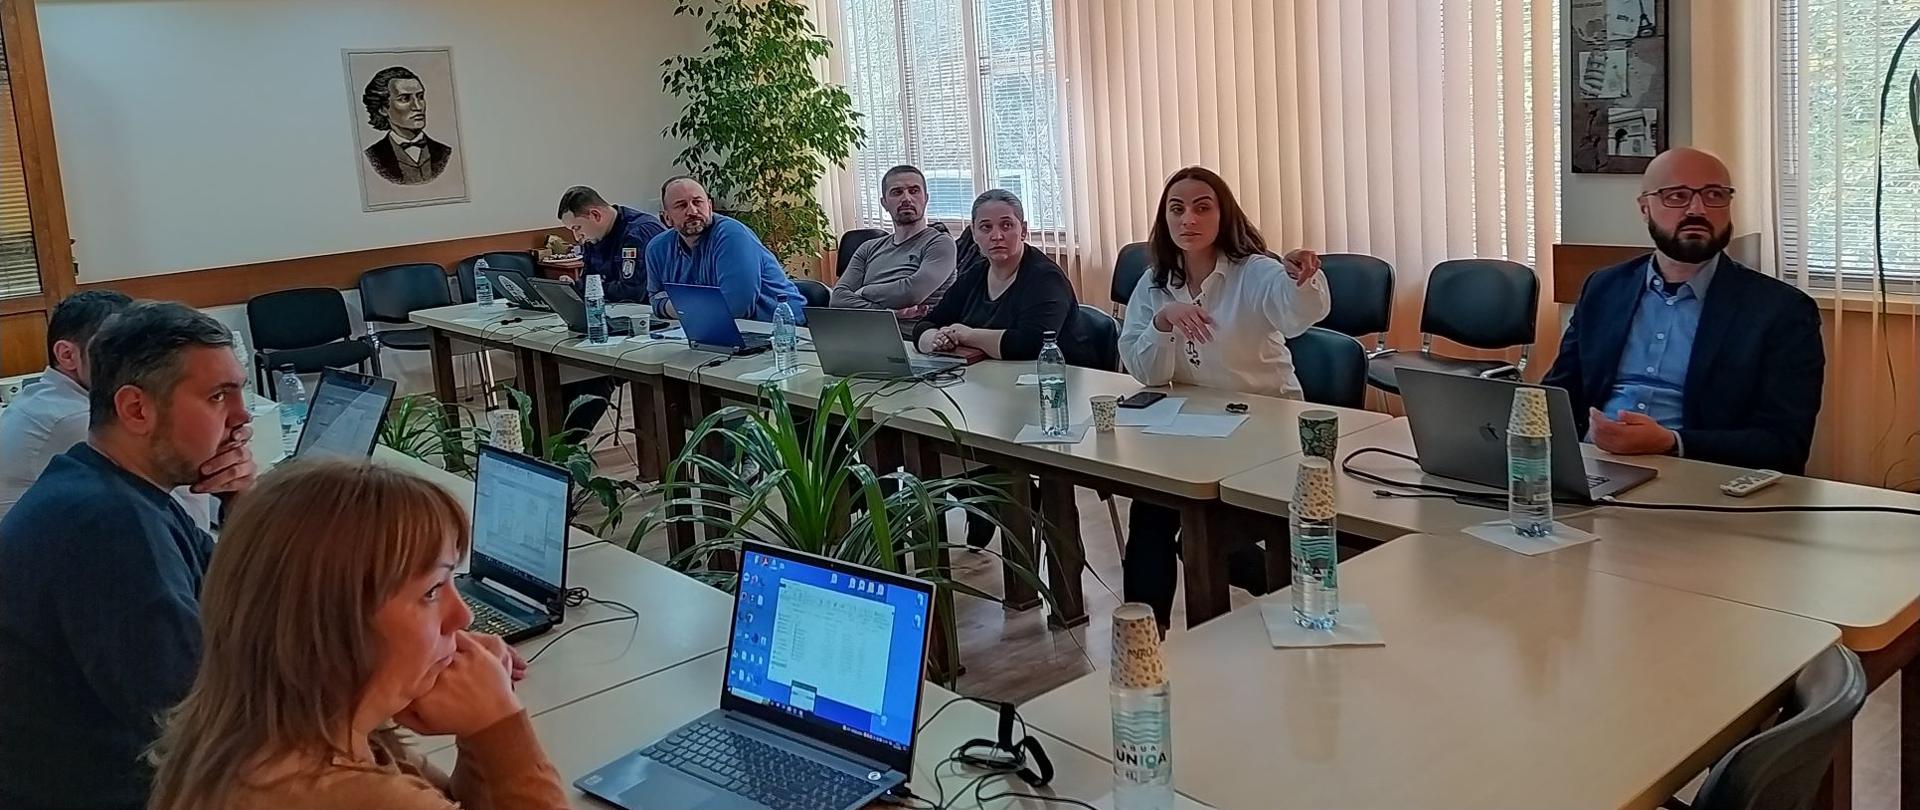 Marcin Grudzień, Dyrektor Departamentu Informacji o Nieruchomościach oraz przedstawiciele mołdawskich instytucji rządowych podczas kontynuacji szkolenia pt. "Modelling utilising standards from ISO 19 100 family"